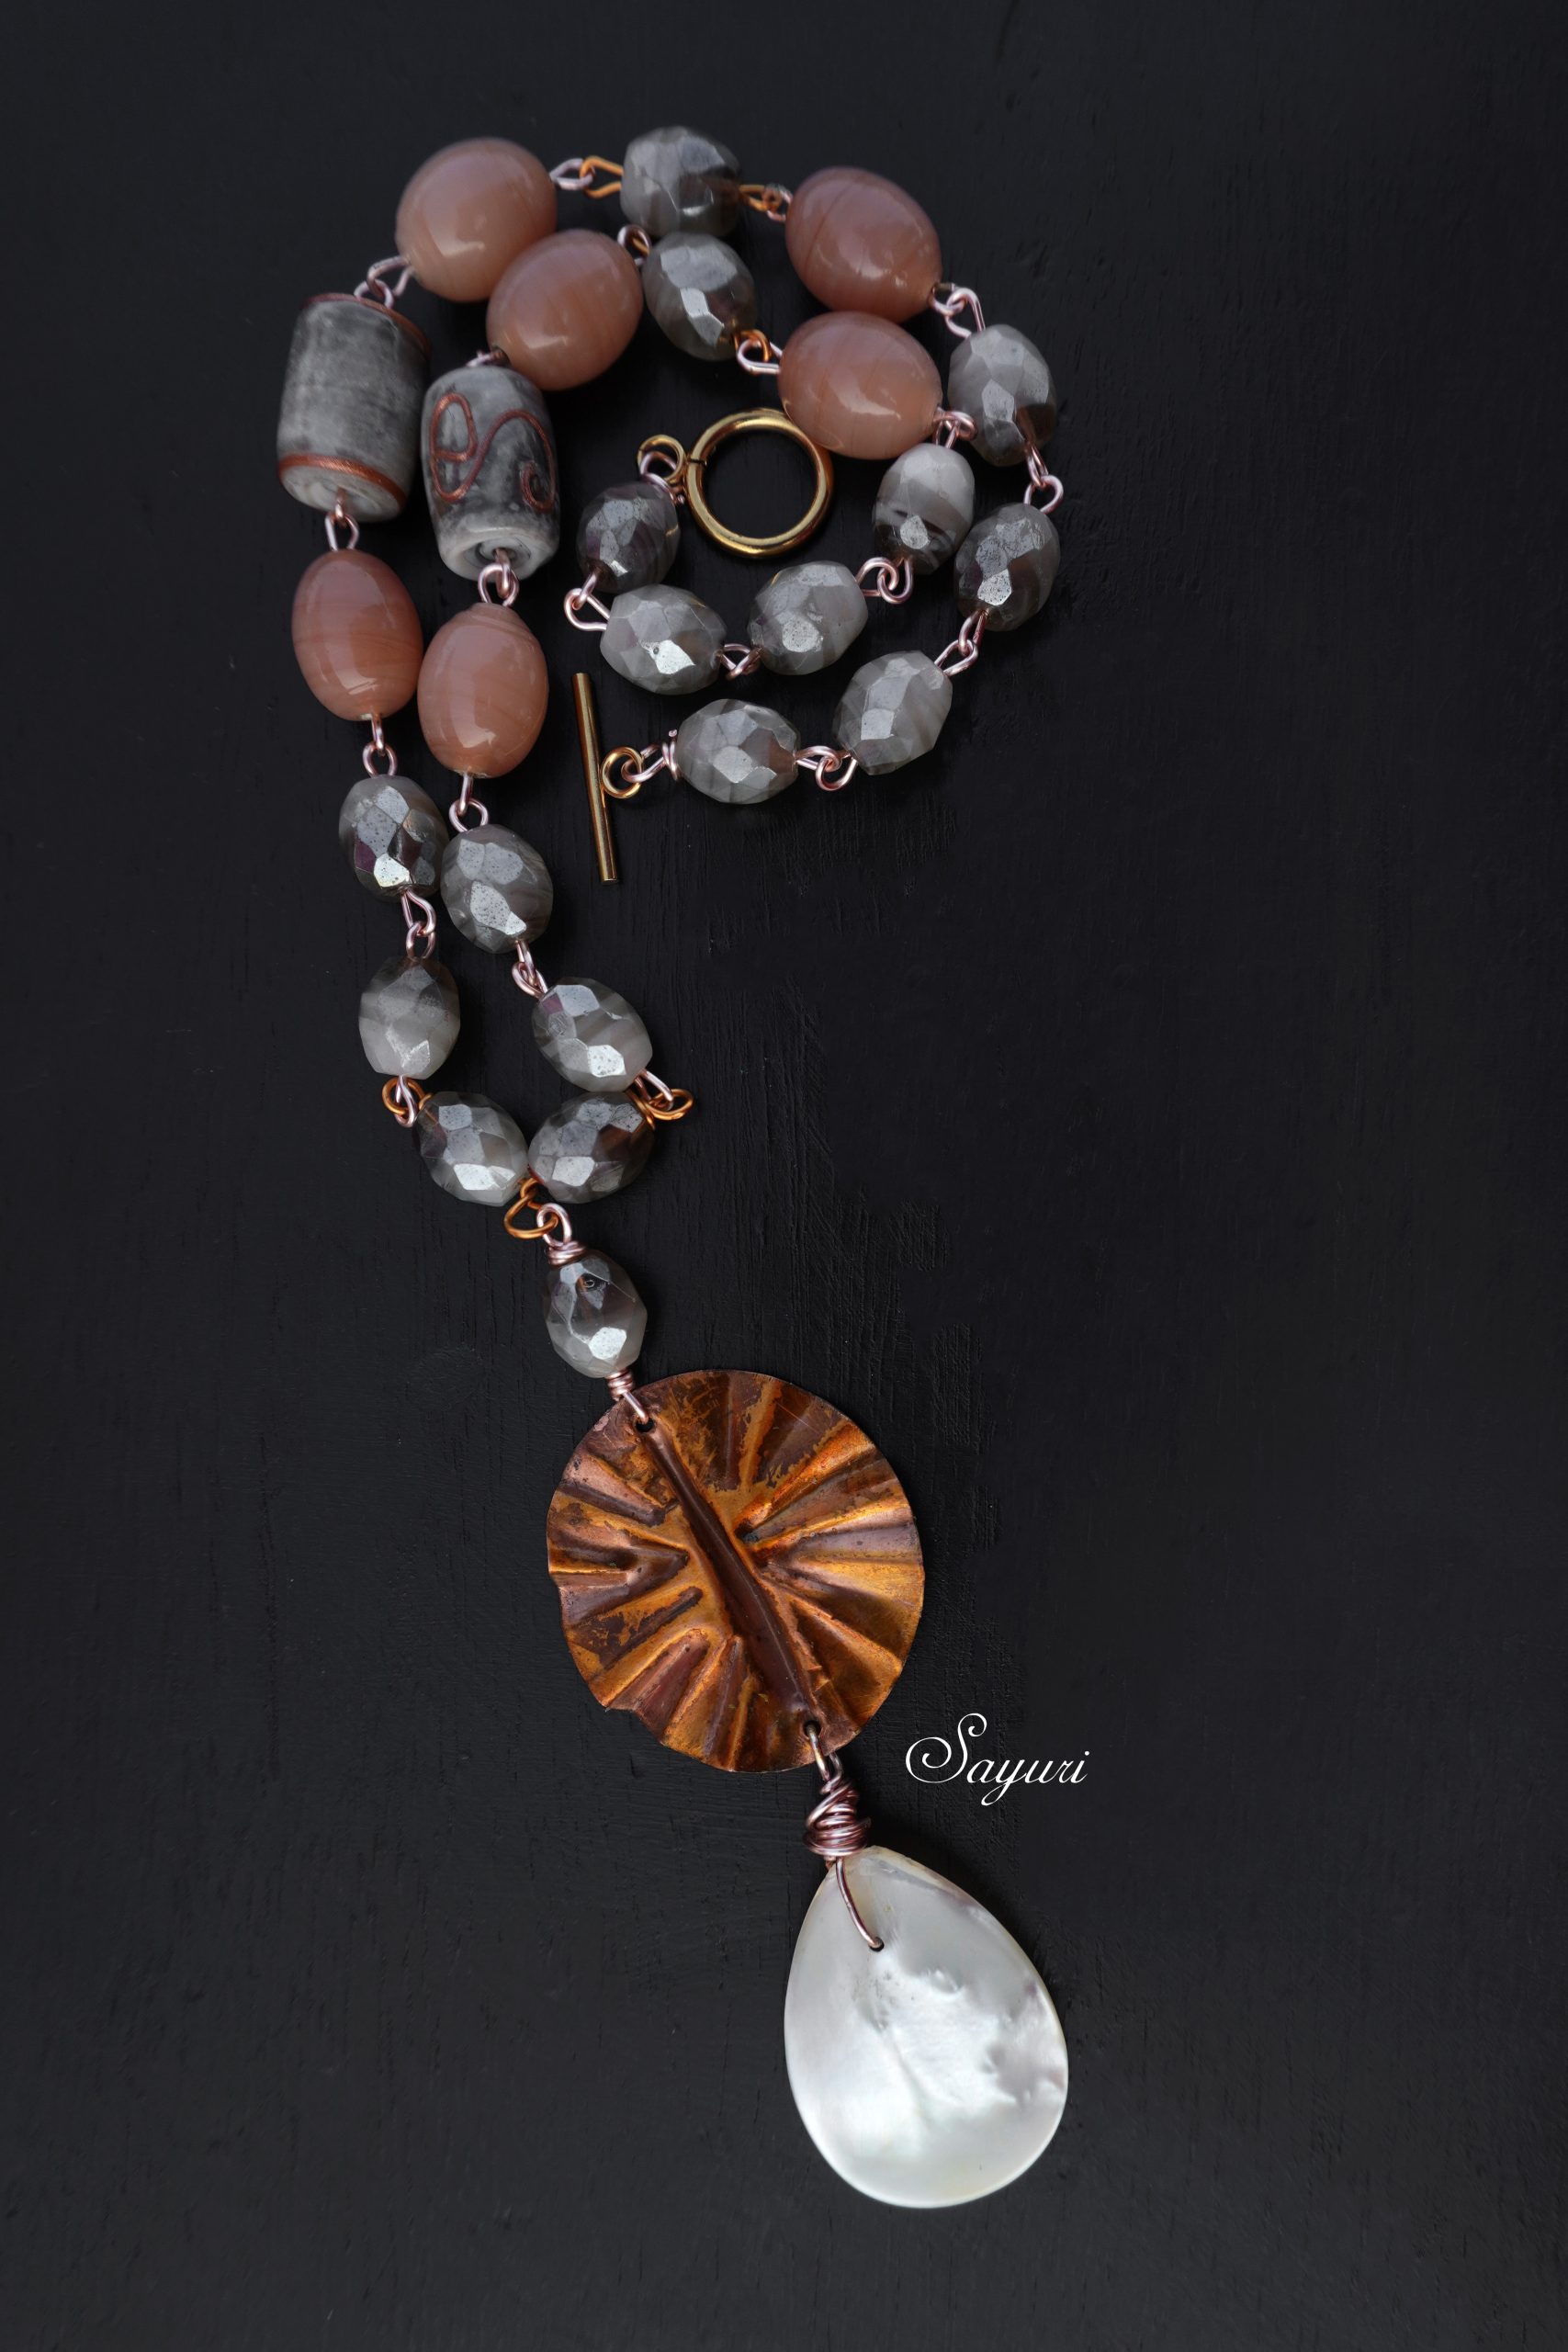 Copper fan necklace